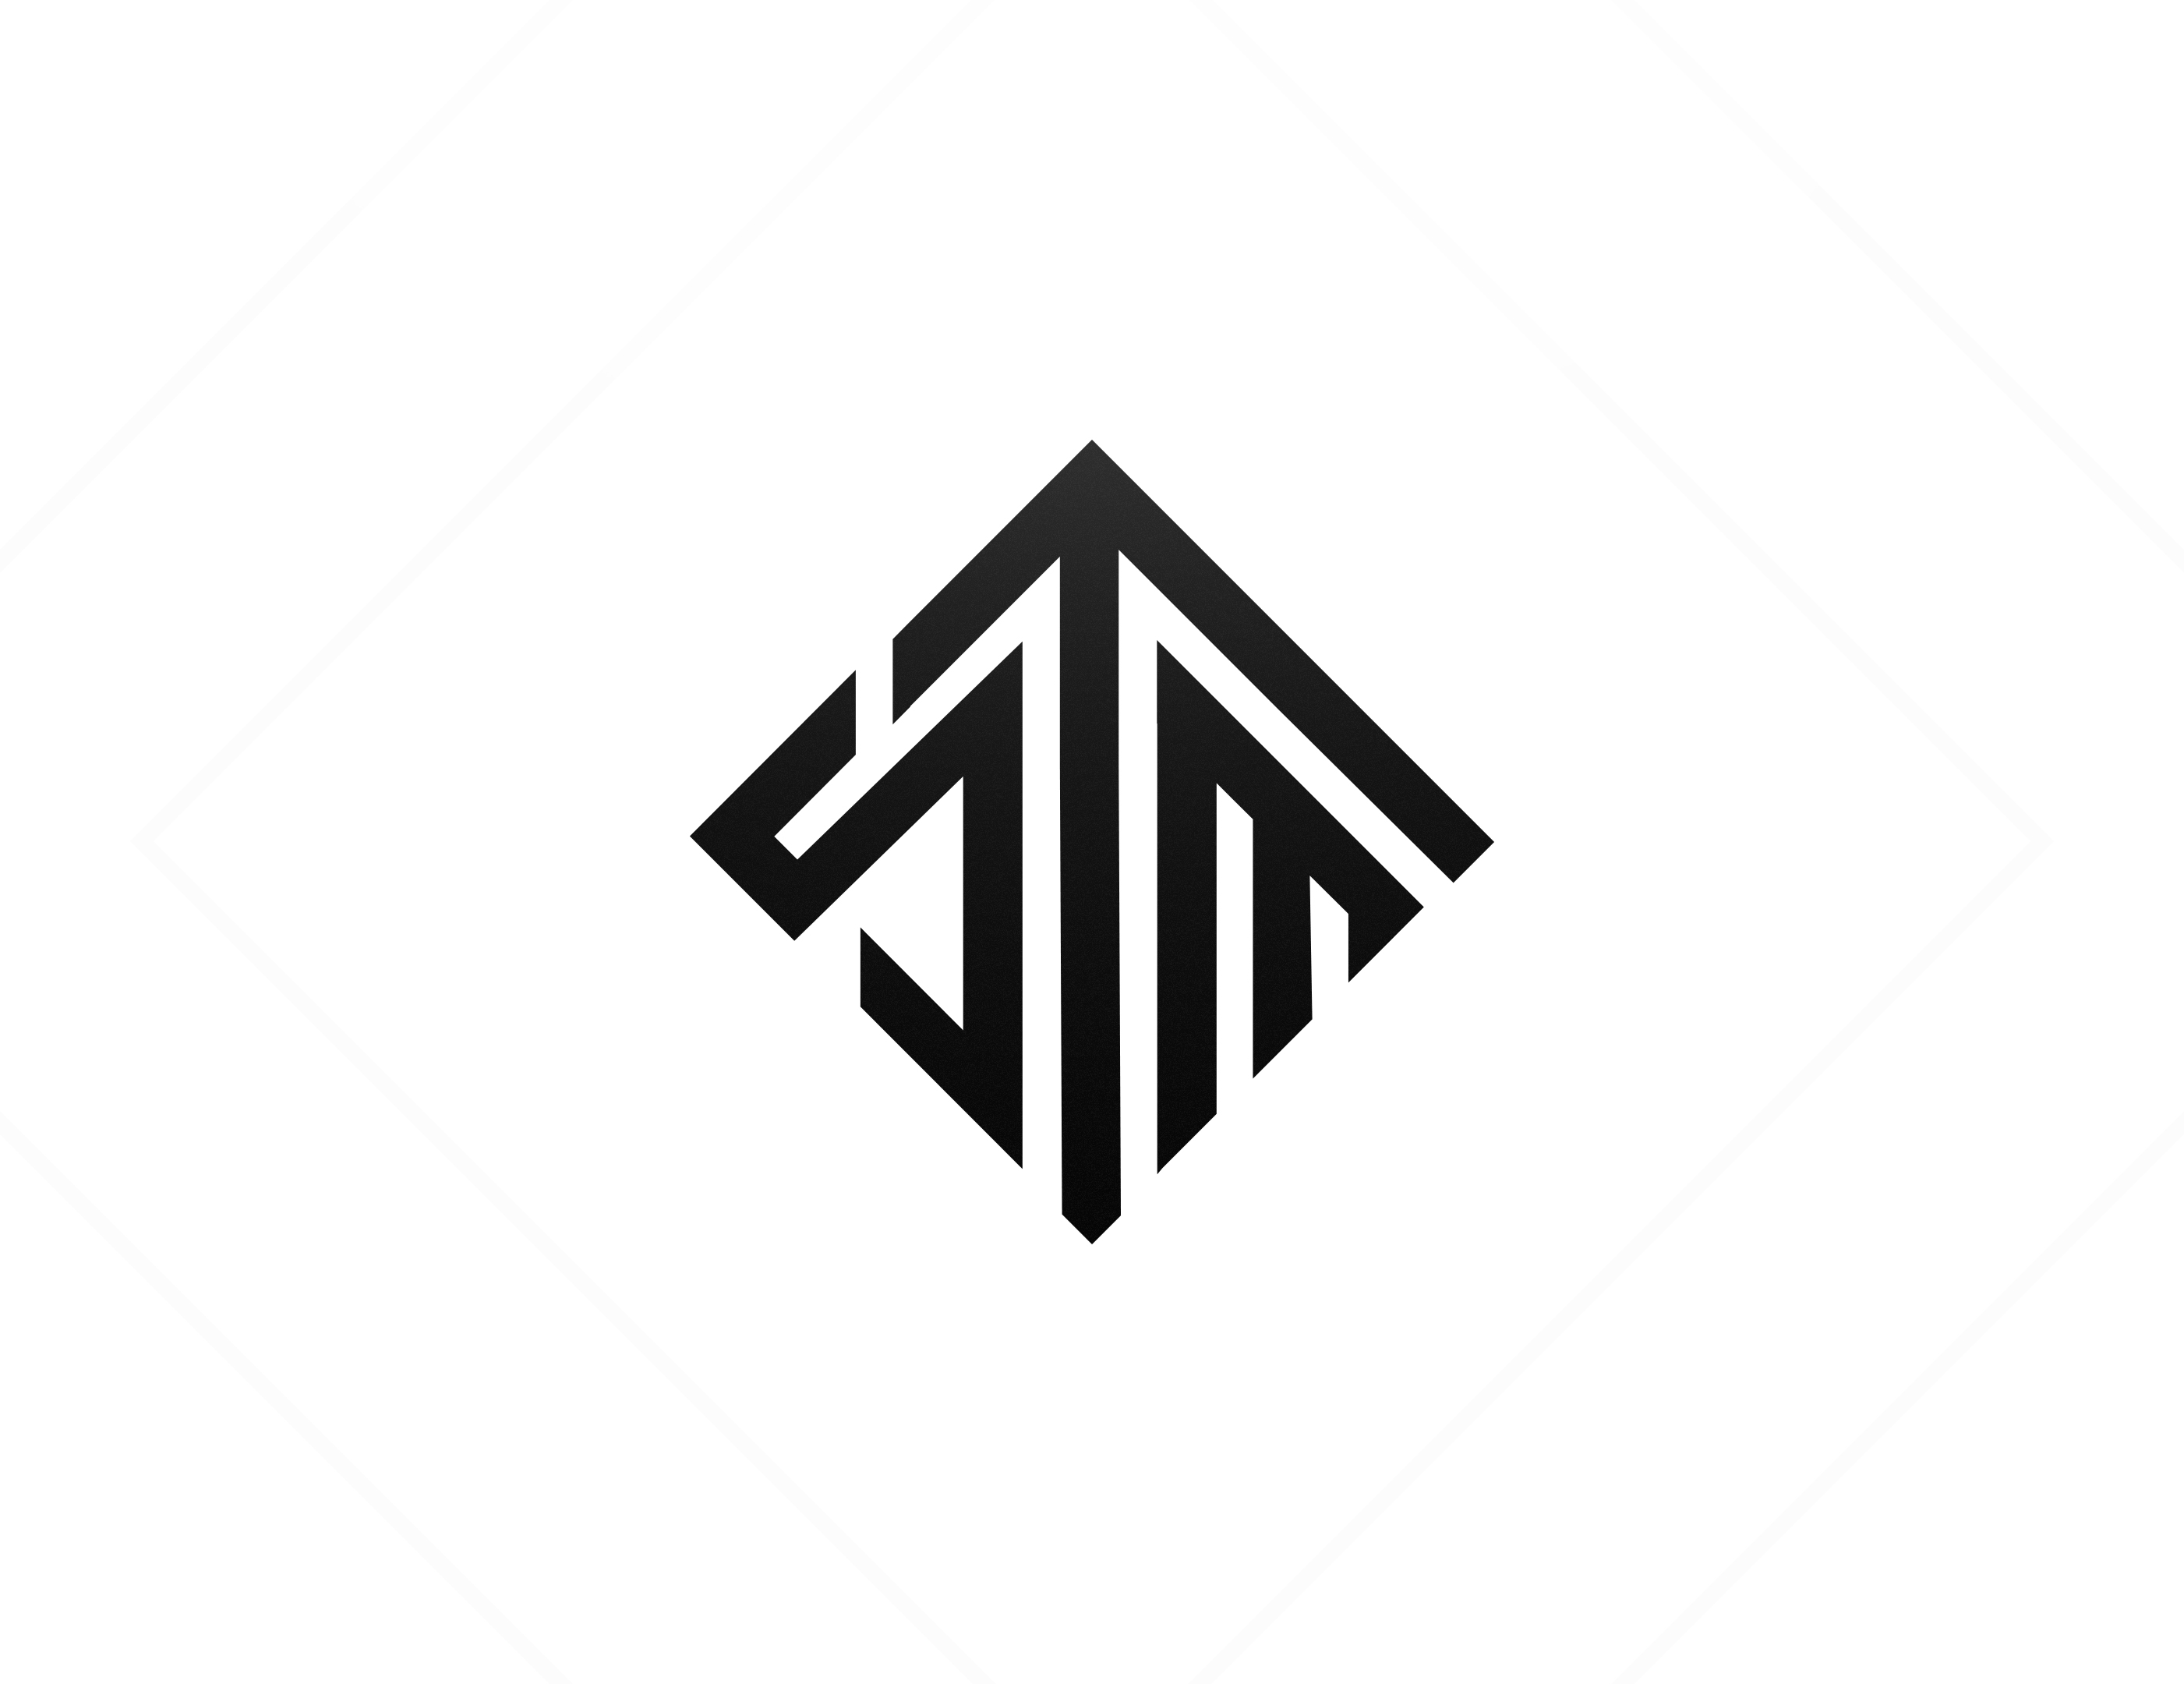 HD tsm logo wallpapers | Peakpx